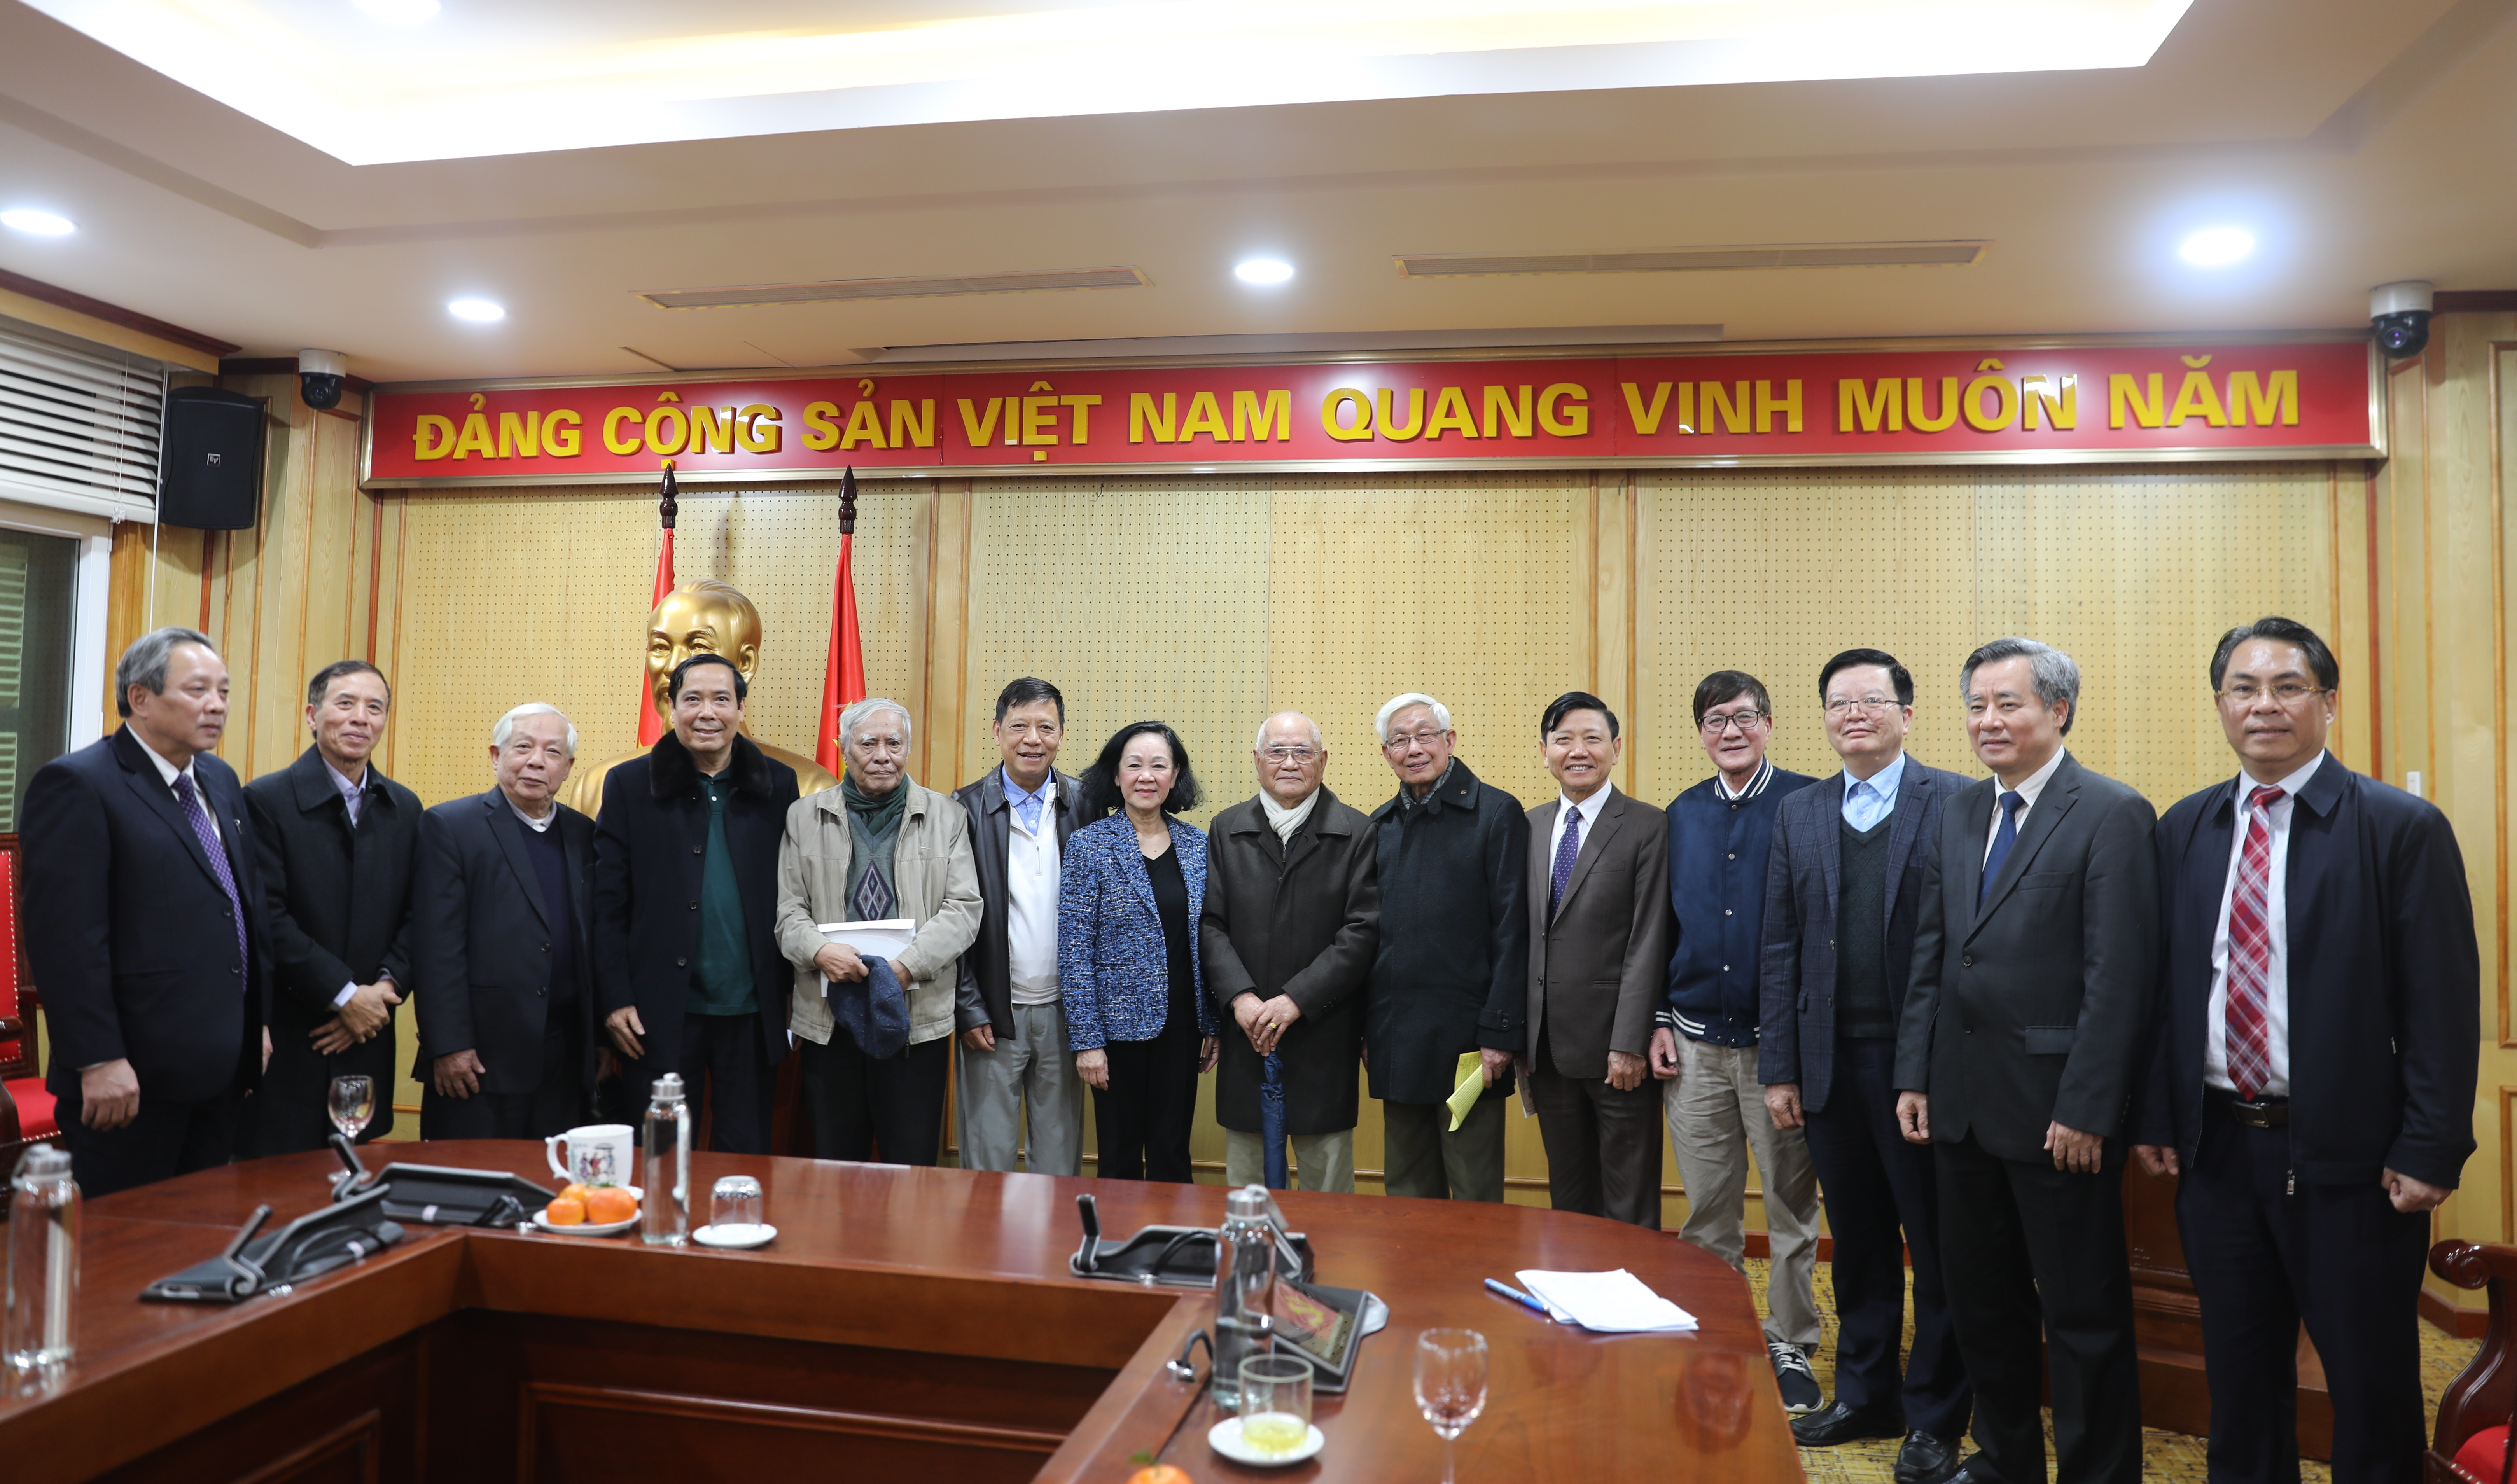 Đ/c Trương Thị Mai chụp ảnh lưu niệm cùng các đồng chí Lãnh đạo và nguyên Lãnh đạo Ban.